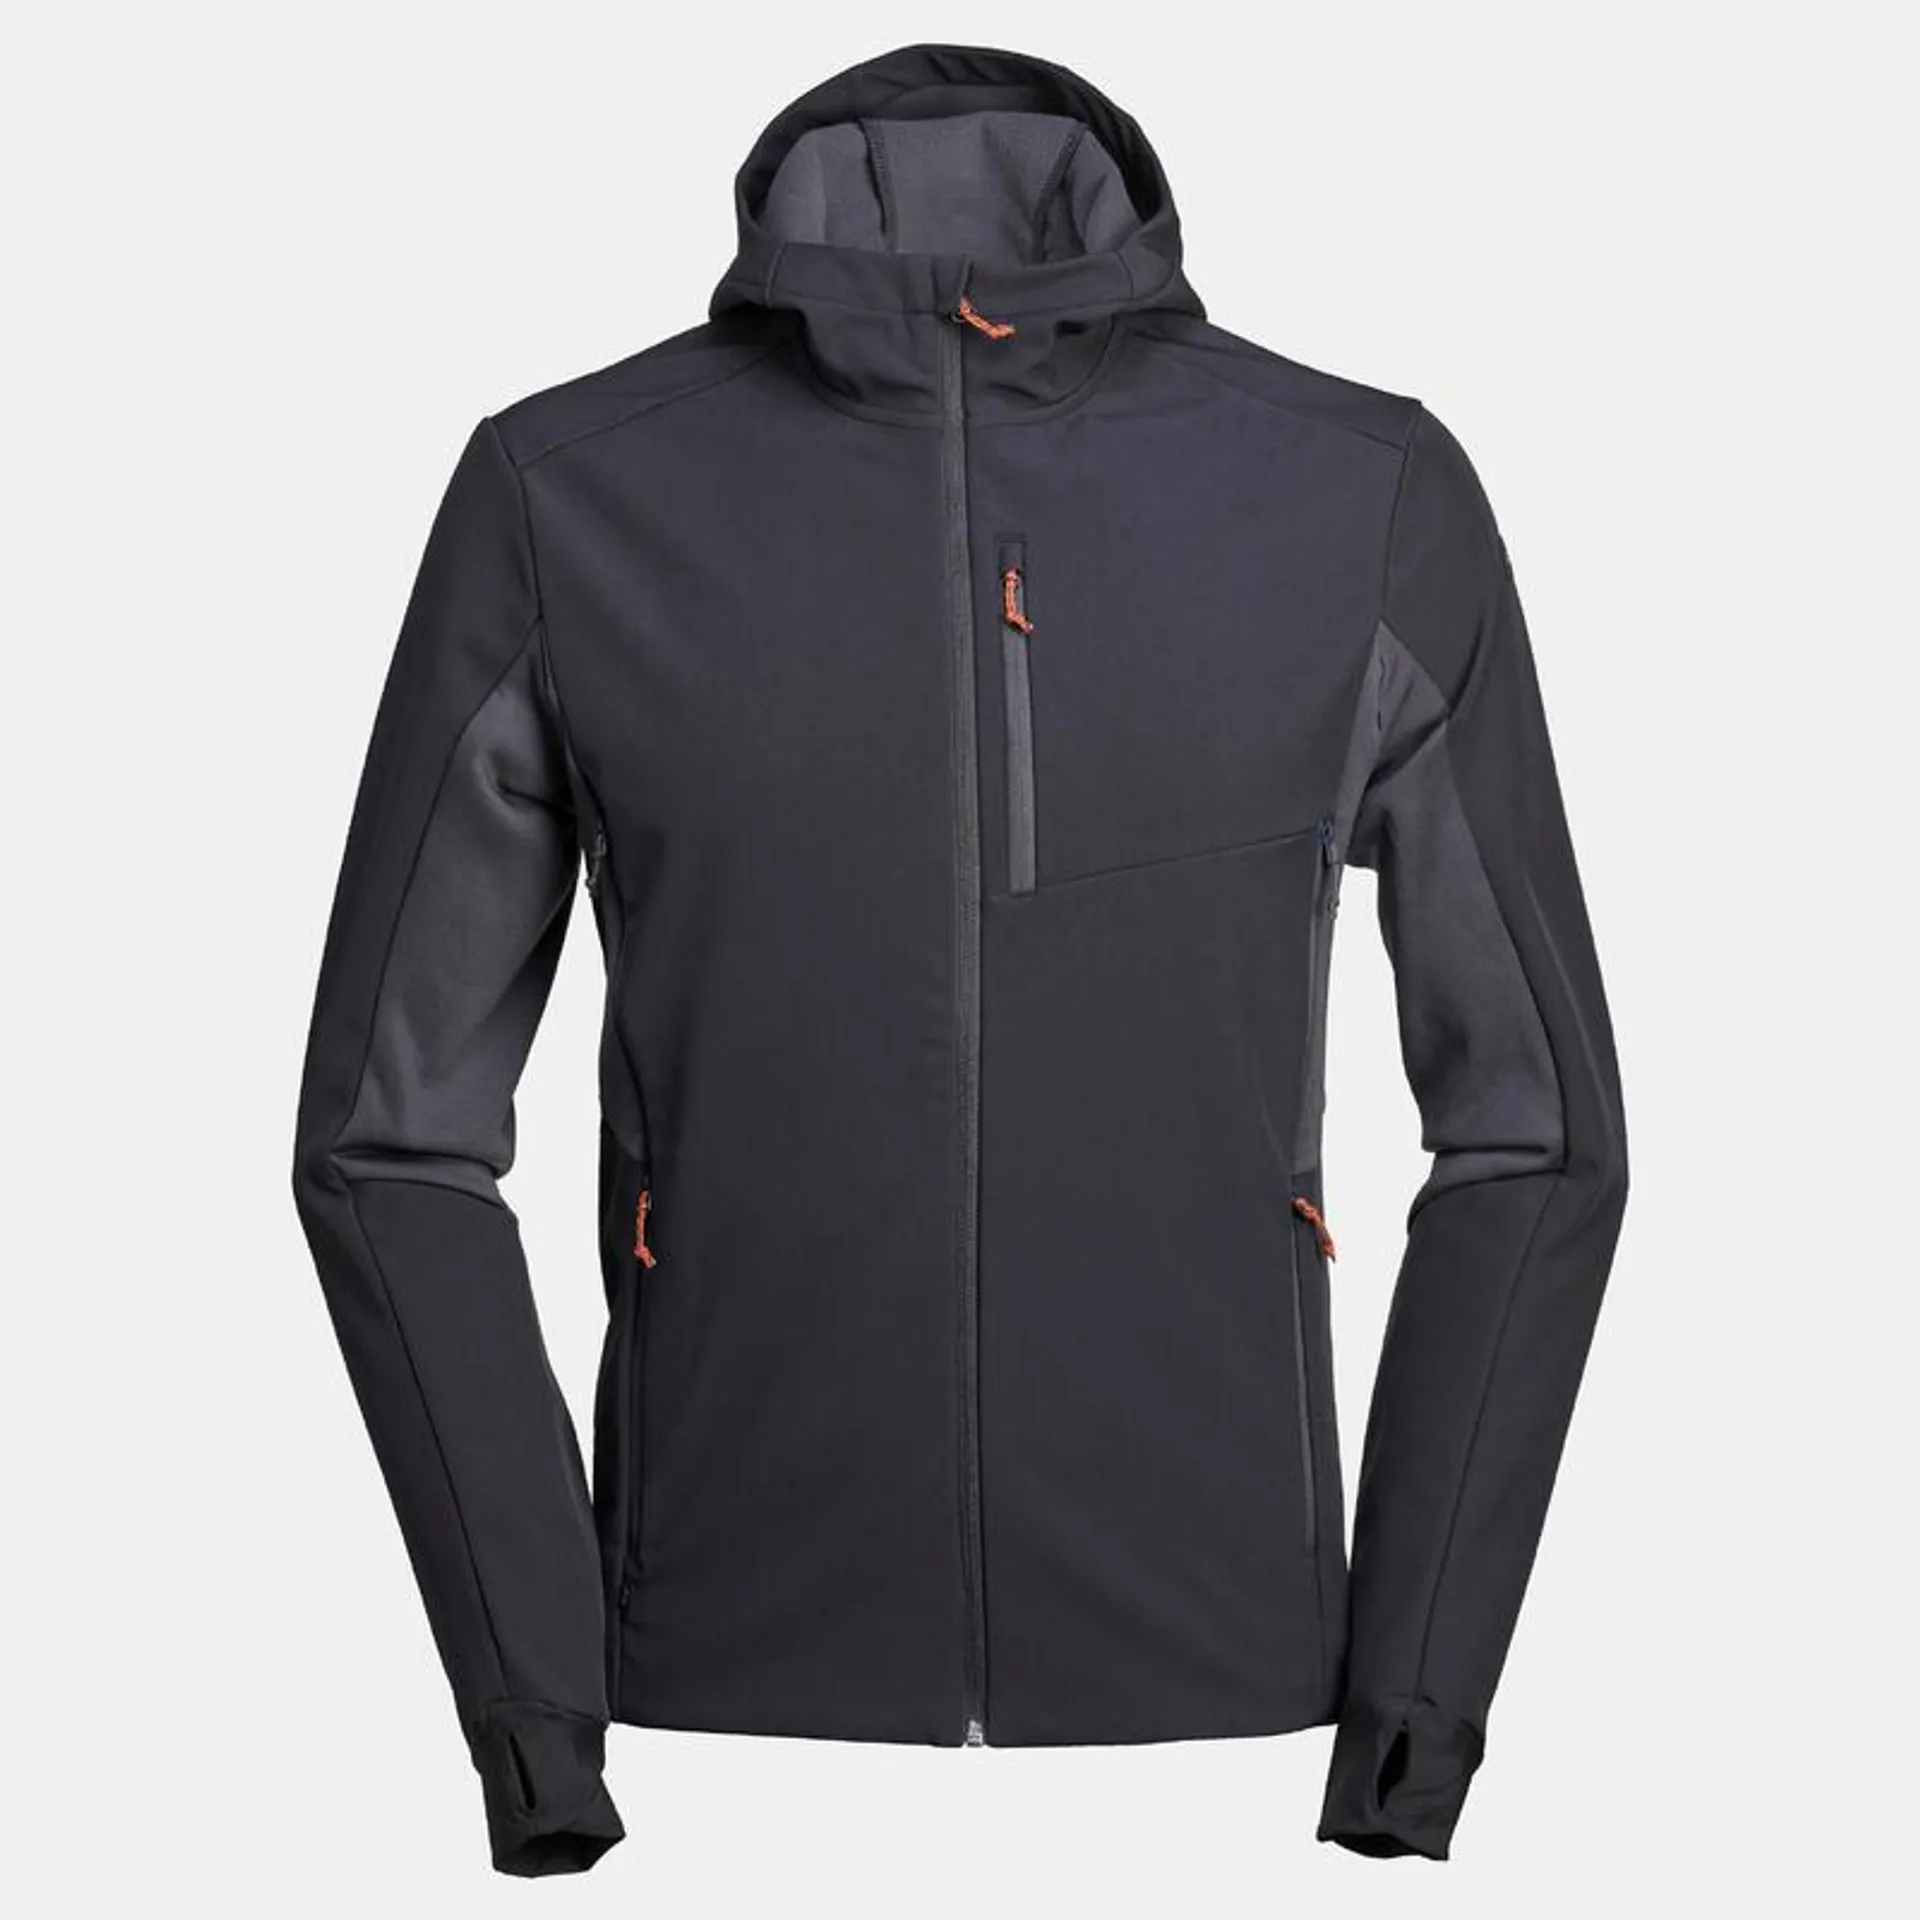 Windbreaker jacket - softshell - warm - MT500 - men’s